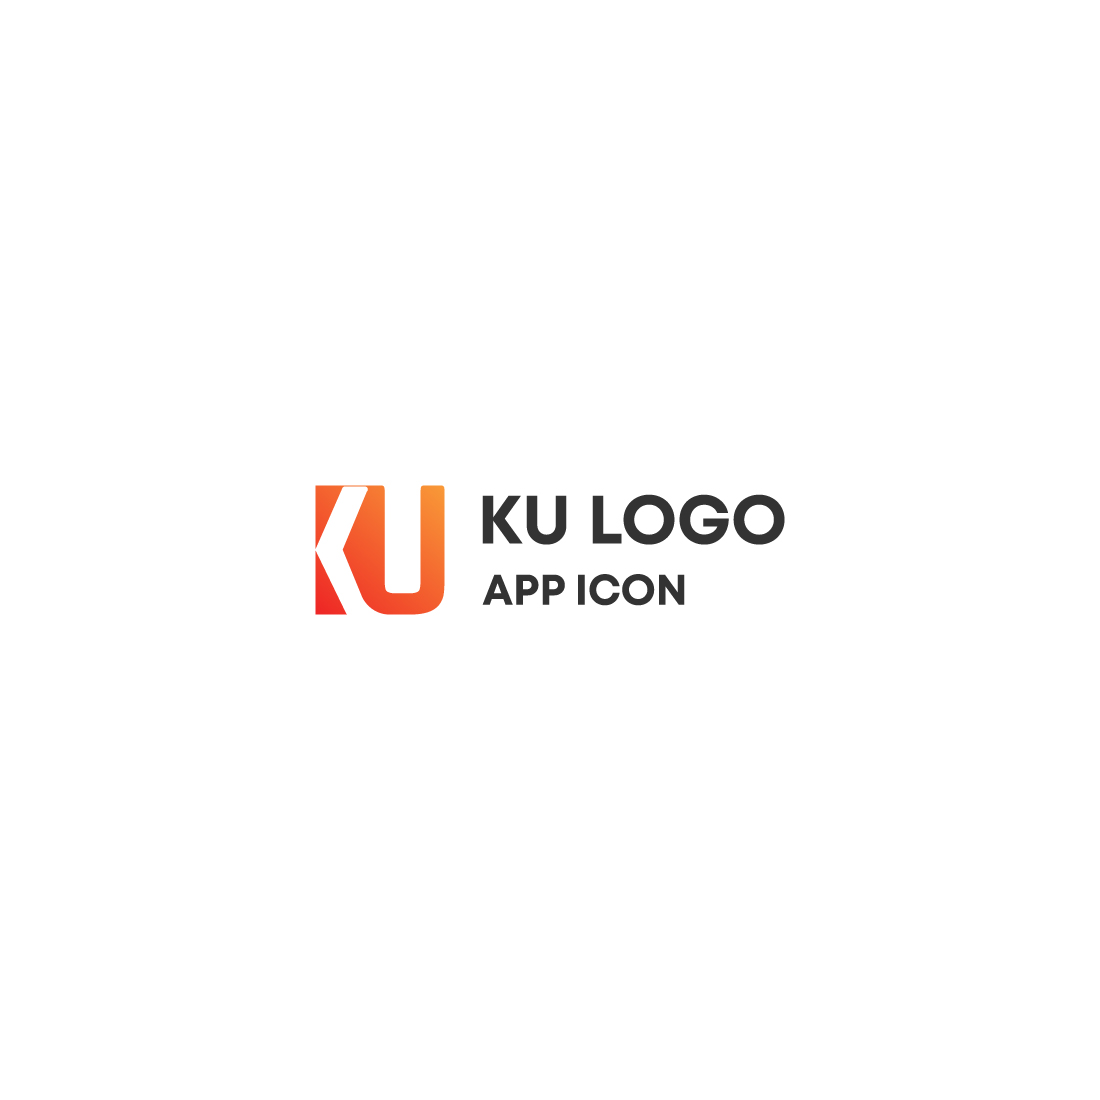 KU logo preview image.